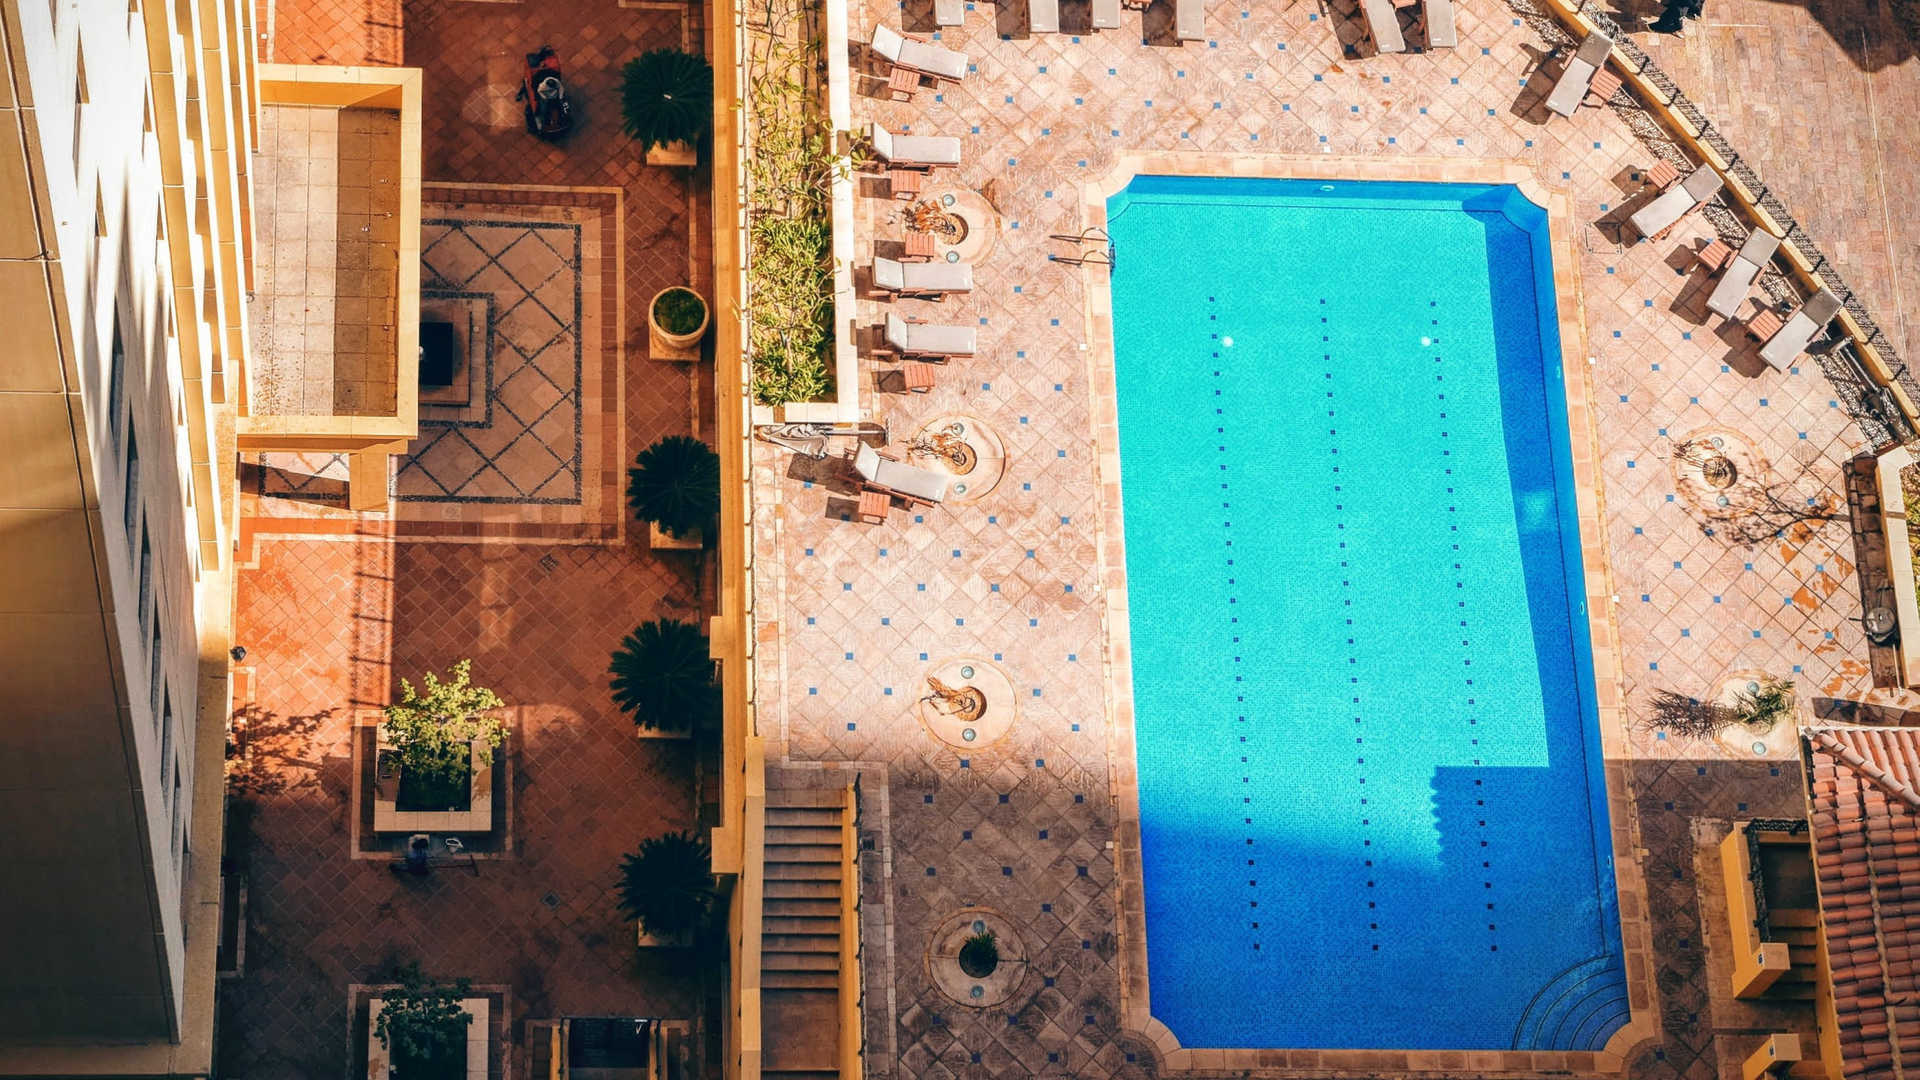 有哪些酒店的游泳池非常特别值得体验一下？ - 知乎